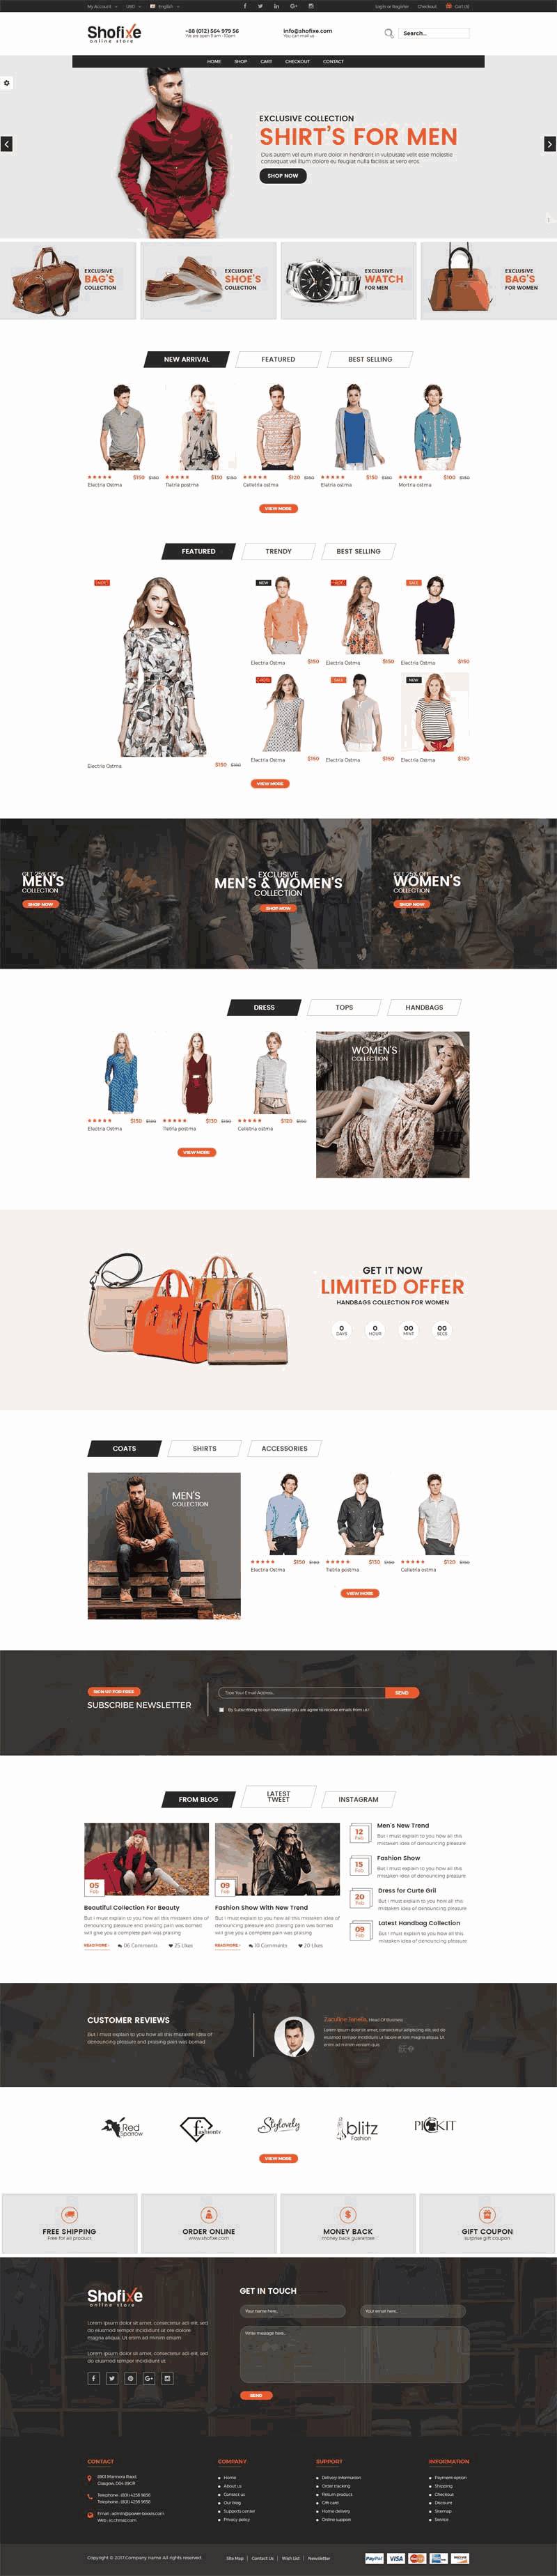 黑色时尚品牌服装箱包购物商城WordPress网站主题模板演示图